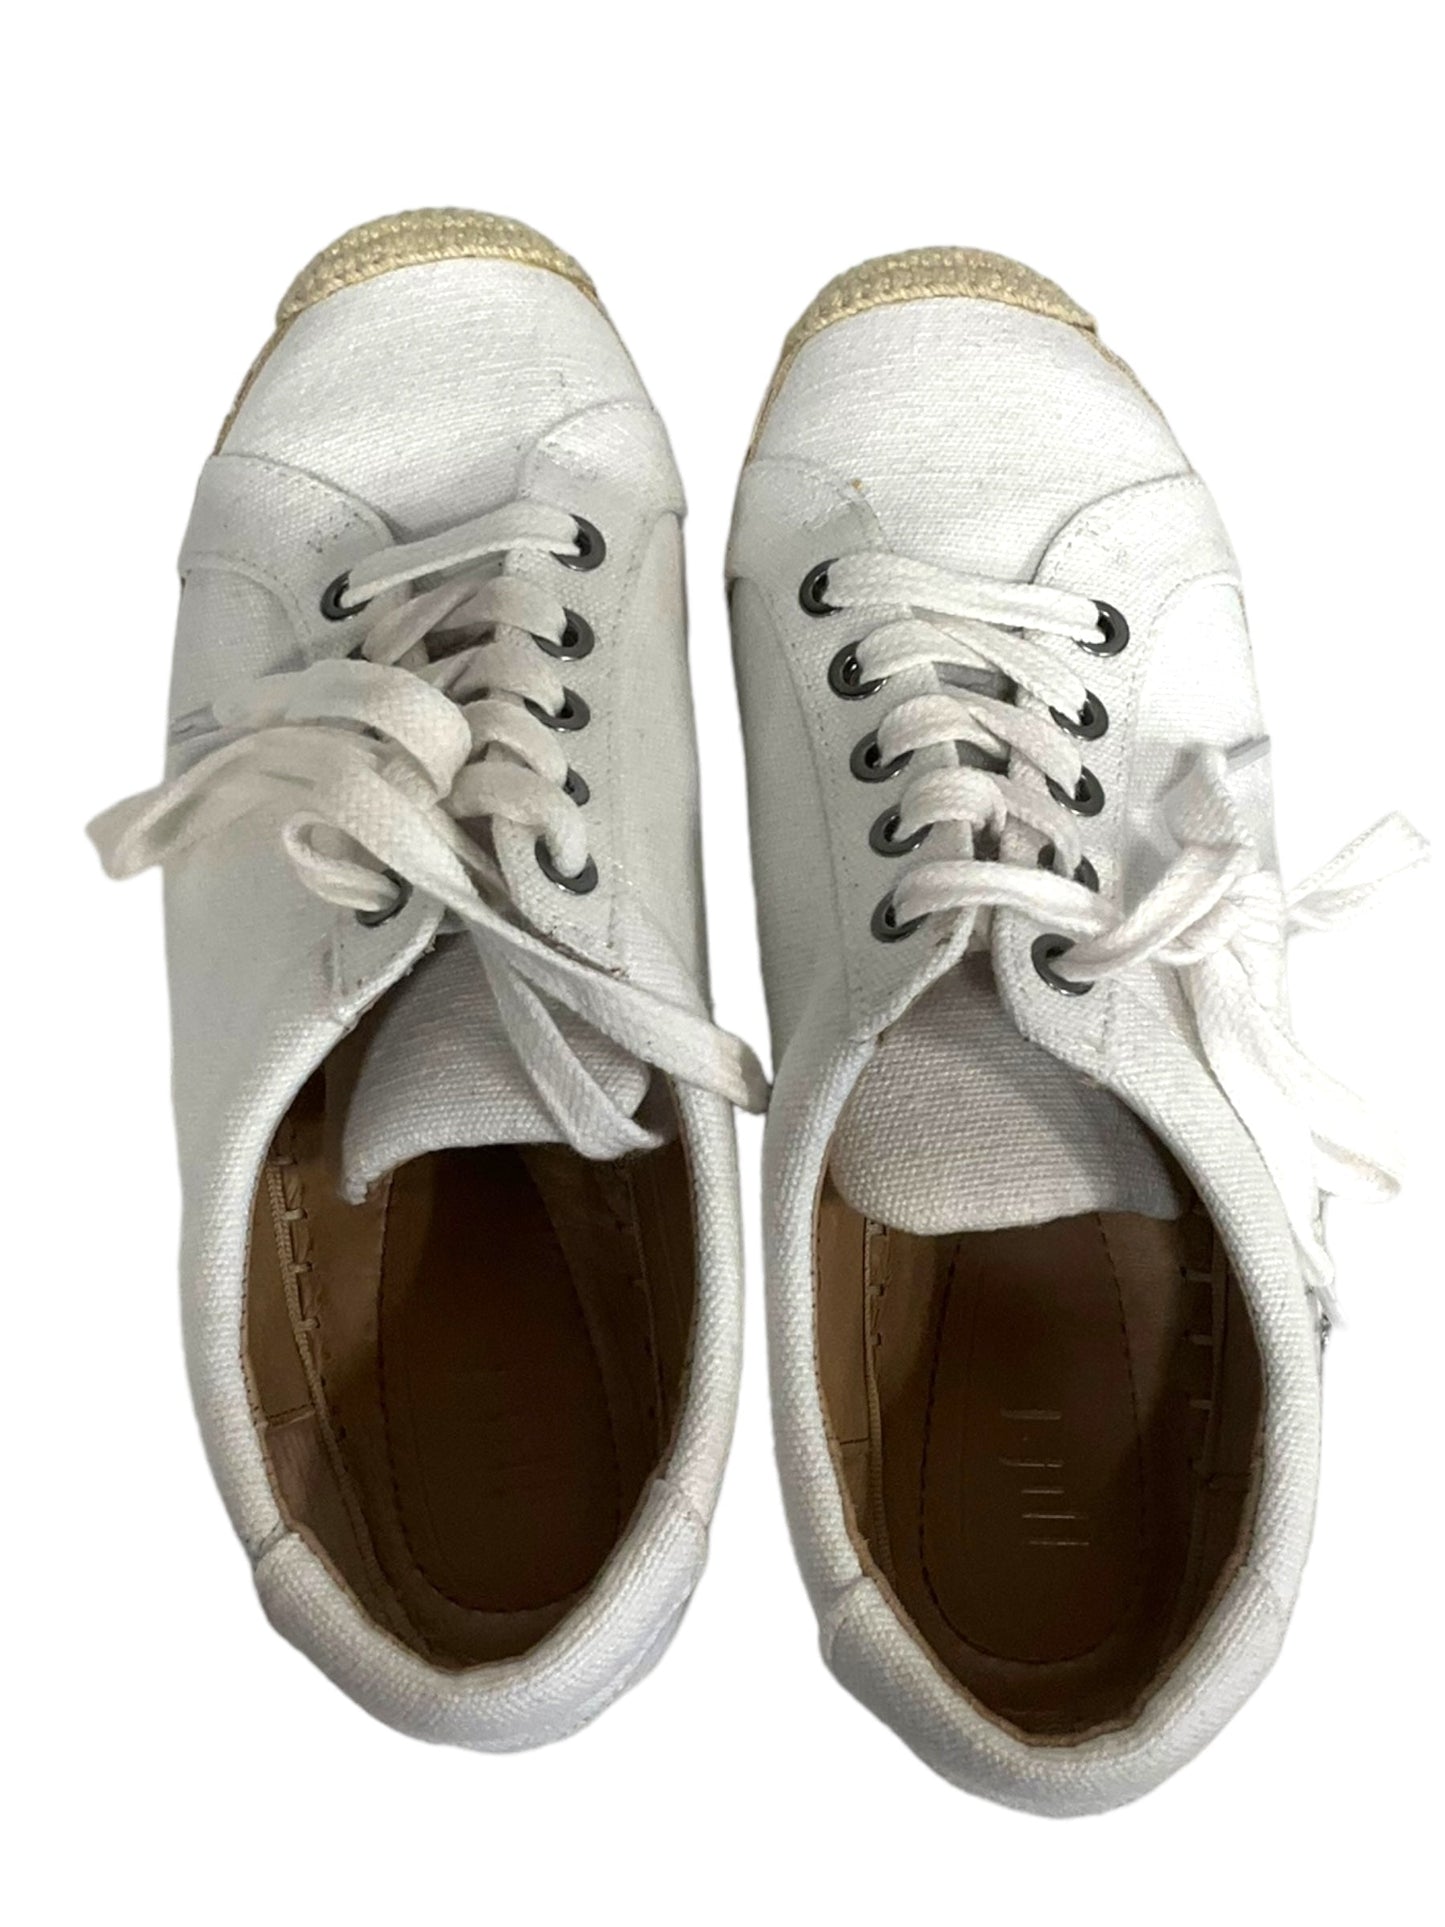 White Shoes Sneakers J Jill, Size 6